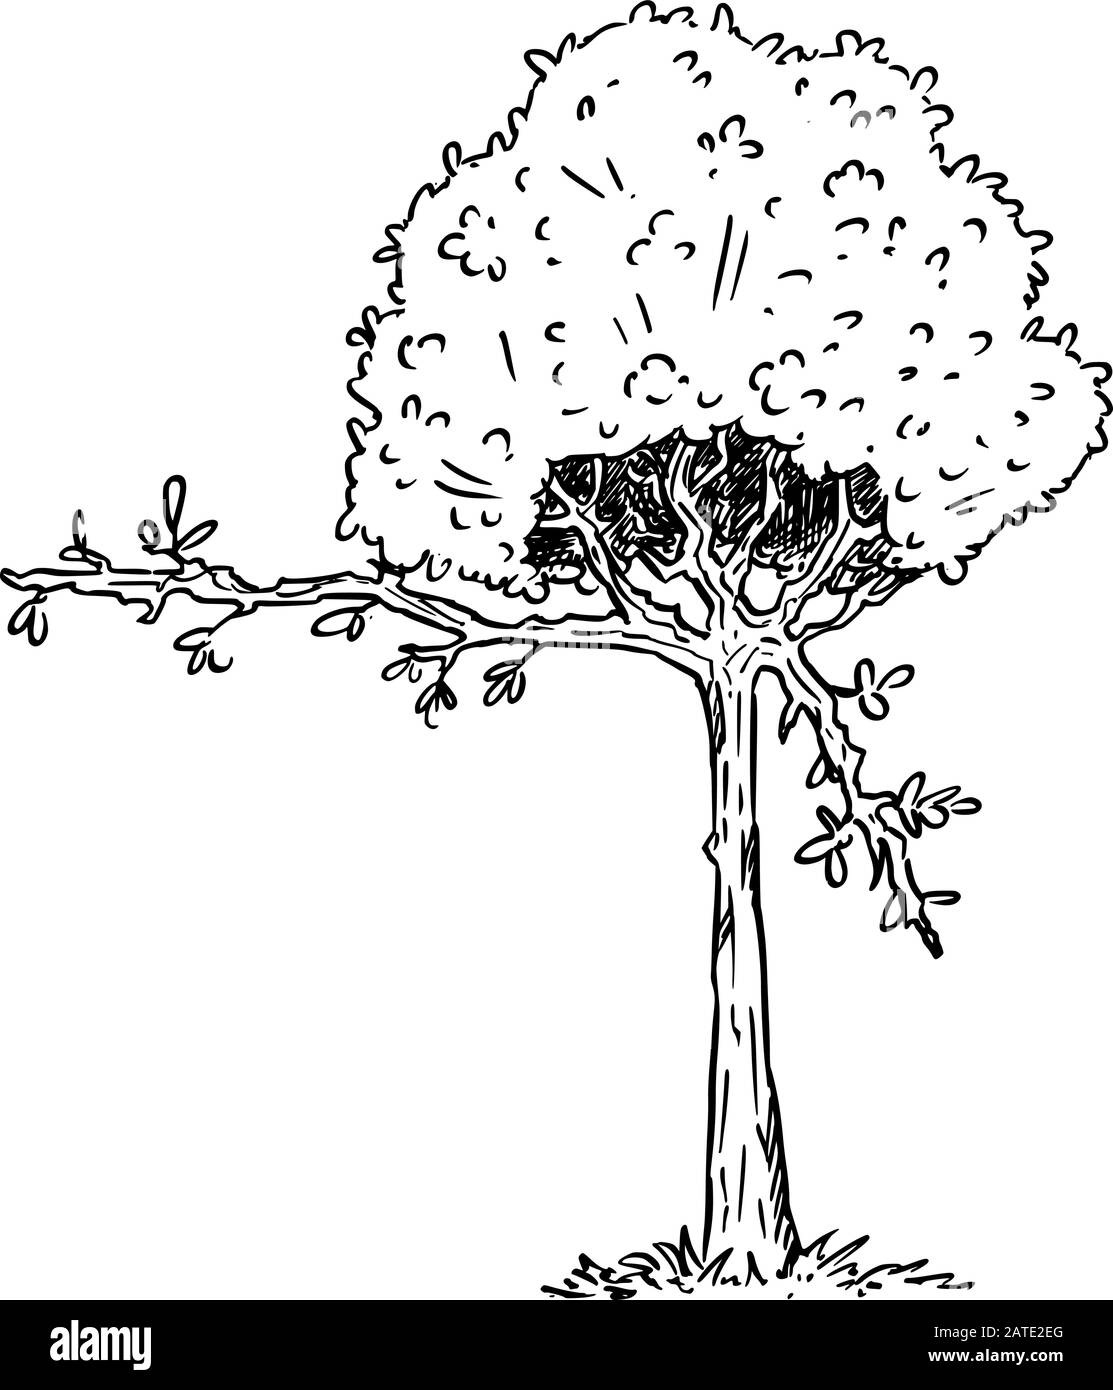 Illustrazione vettoriale del carattere della pianta dell'albero di fioritura del cartone animato che mostra o punta a qualcosa dal ramo con le foglie. Ecologia o natura pubblicità o disegno di vendita. Illustrazione Vettoriale